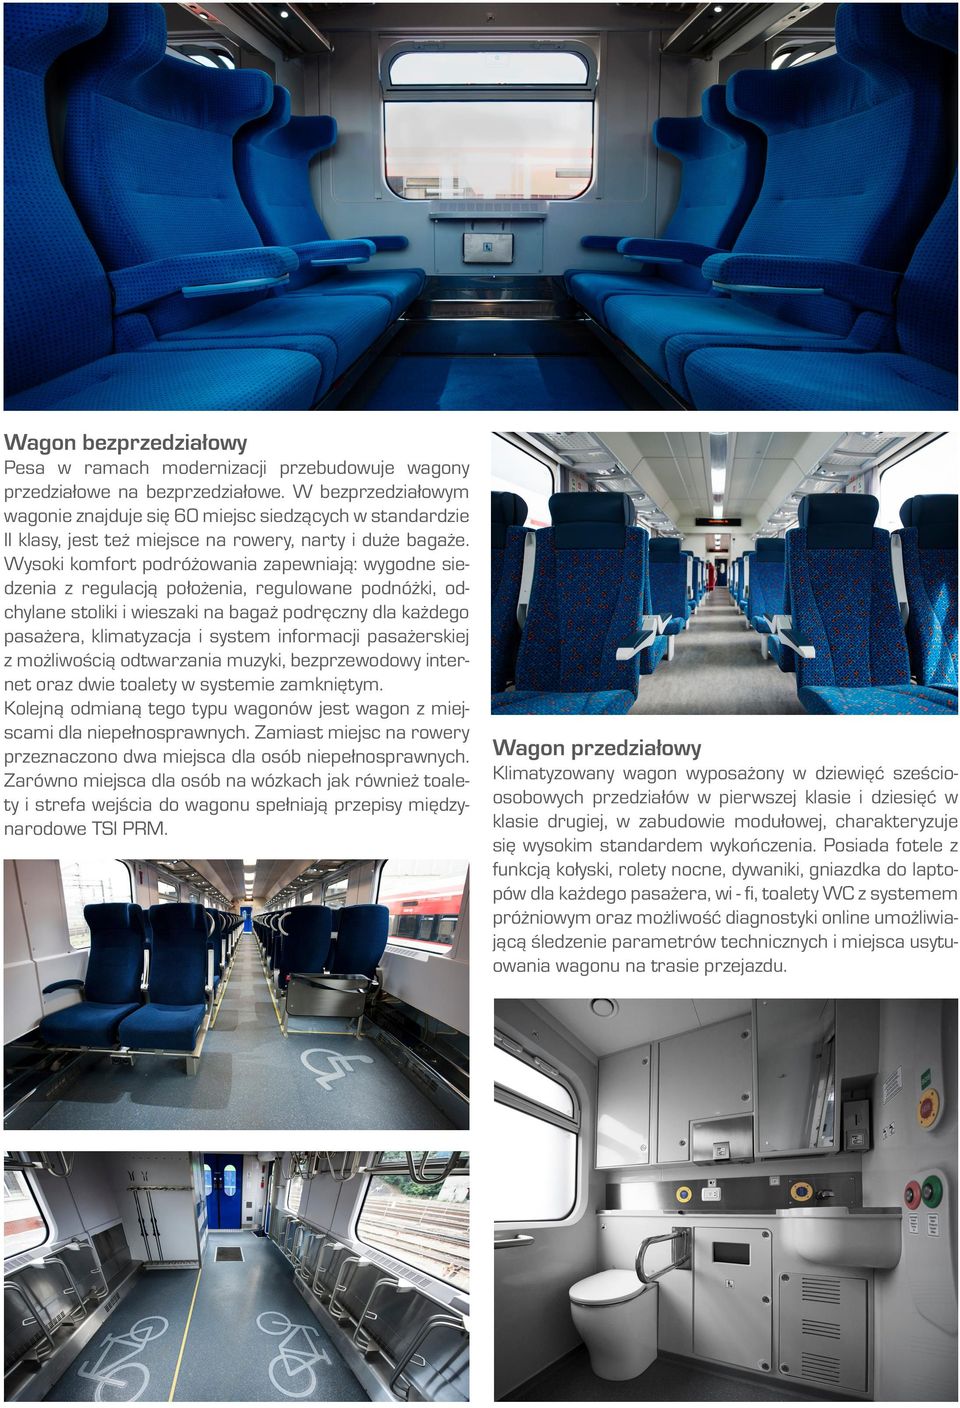 Wysoki komfort podróżowania zapewniają: wygodne siedzenia z regulacją położenia, regulowane podnóżki, odchylane stoliki i wieszaki na bagaż podręczny dla każdego pasażera, klimatyzacja i system